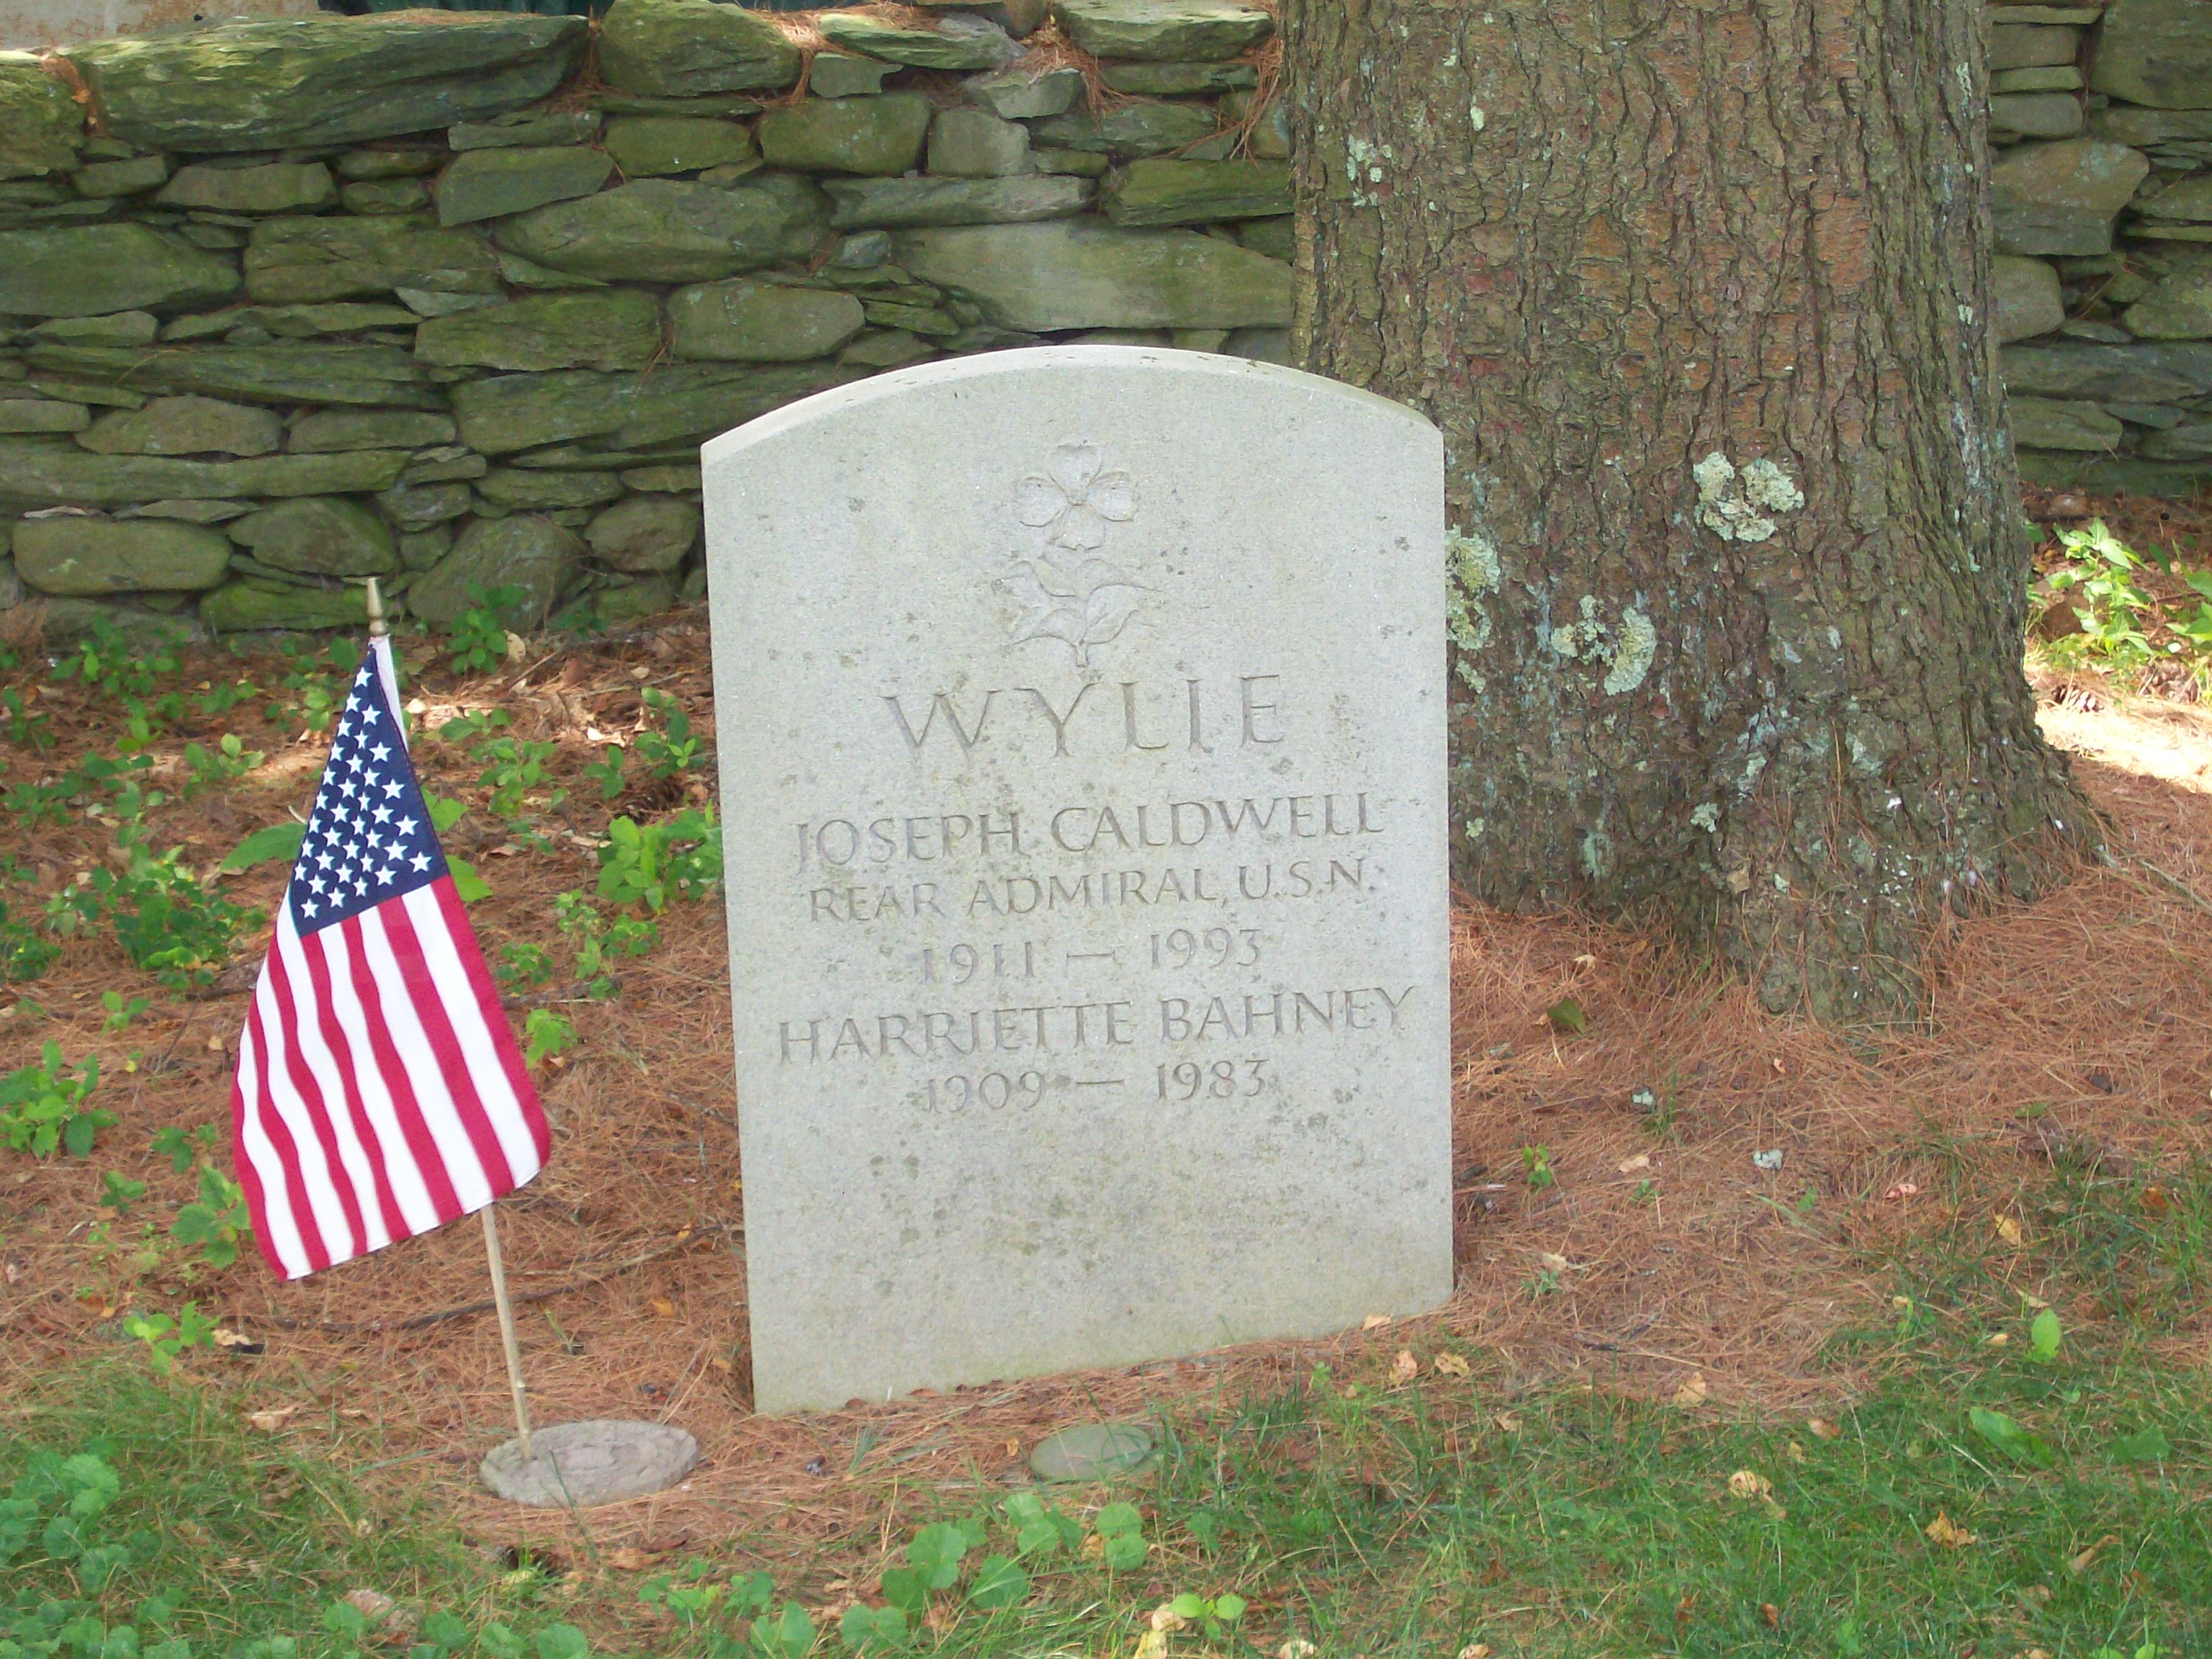 Wylie's headstone